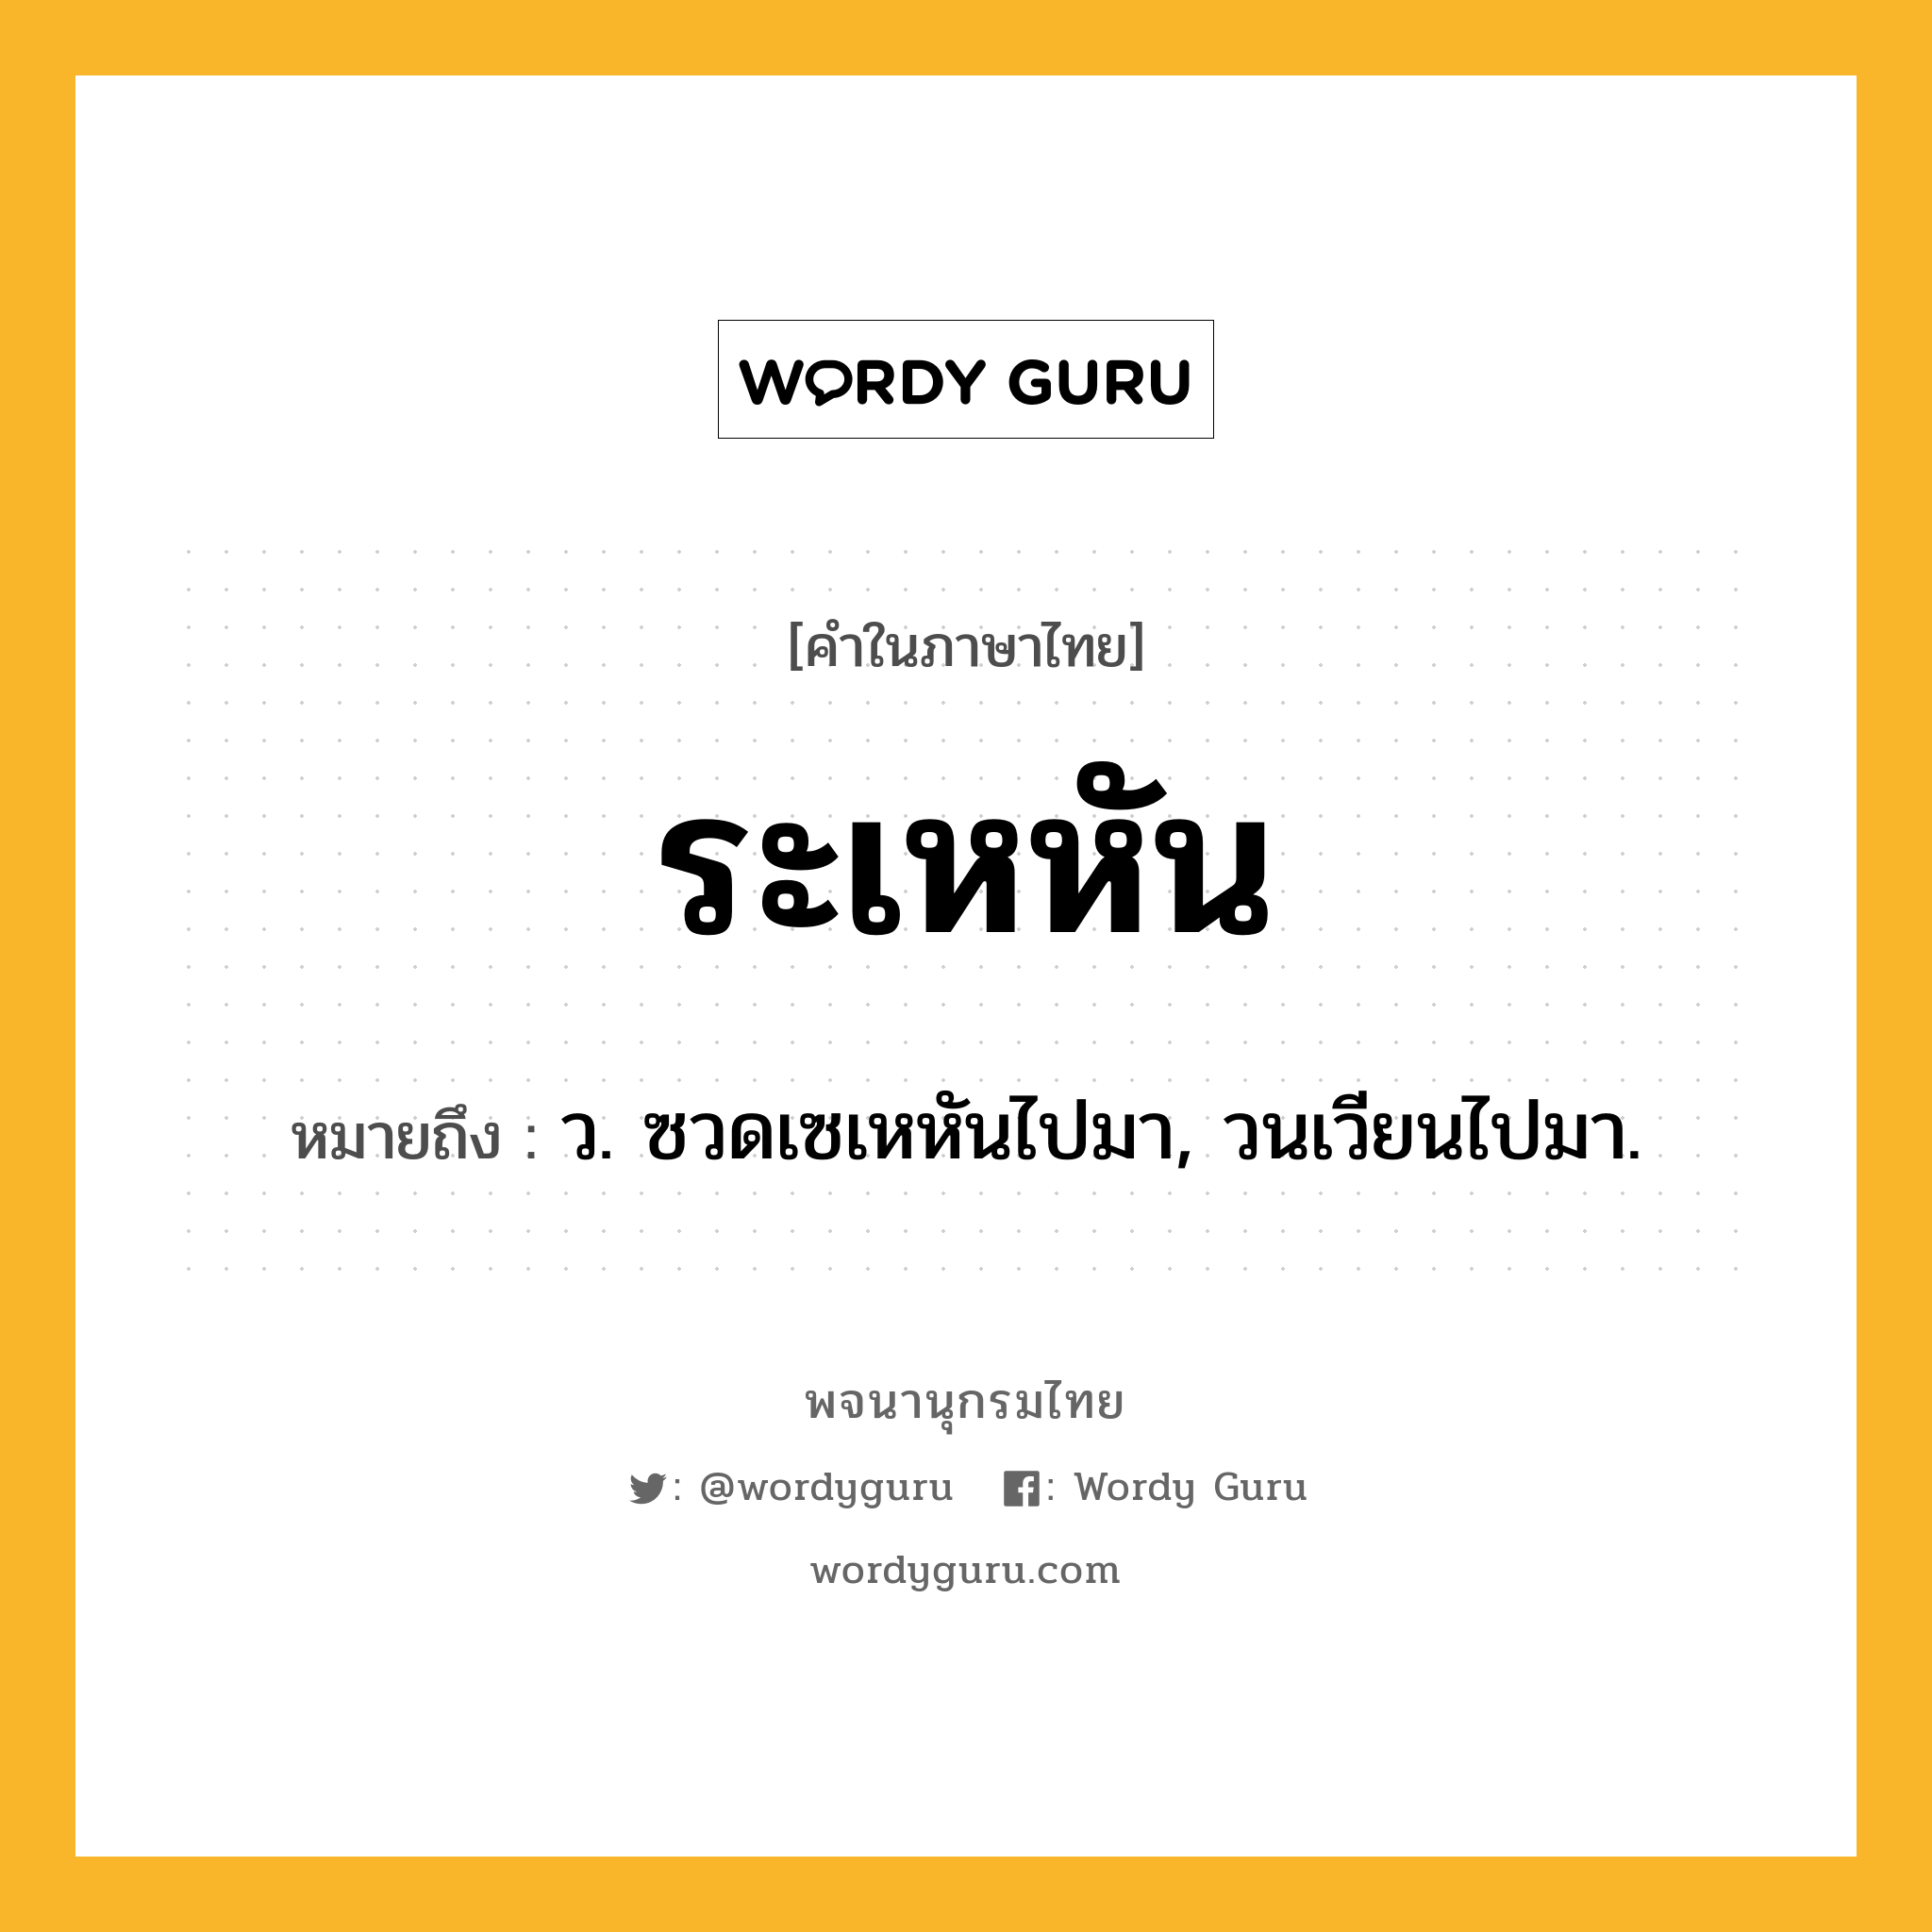 ระเหหัน ความหมาย หมายถึงอะไร?, คำในภาษาไทย ระเหหัน หมายถึง ว. ซวดเซเหหันไปมา, วนเวียนไปมา.